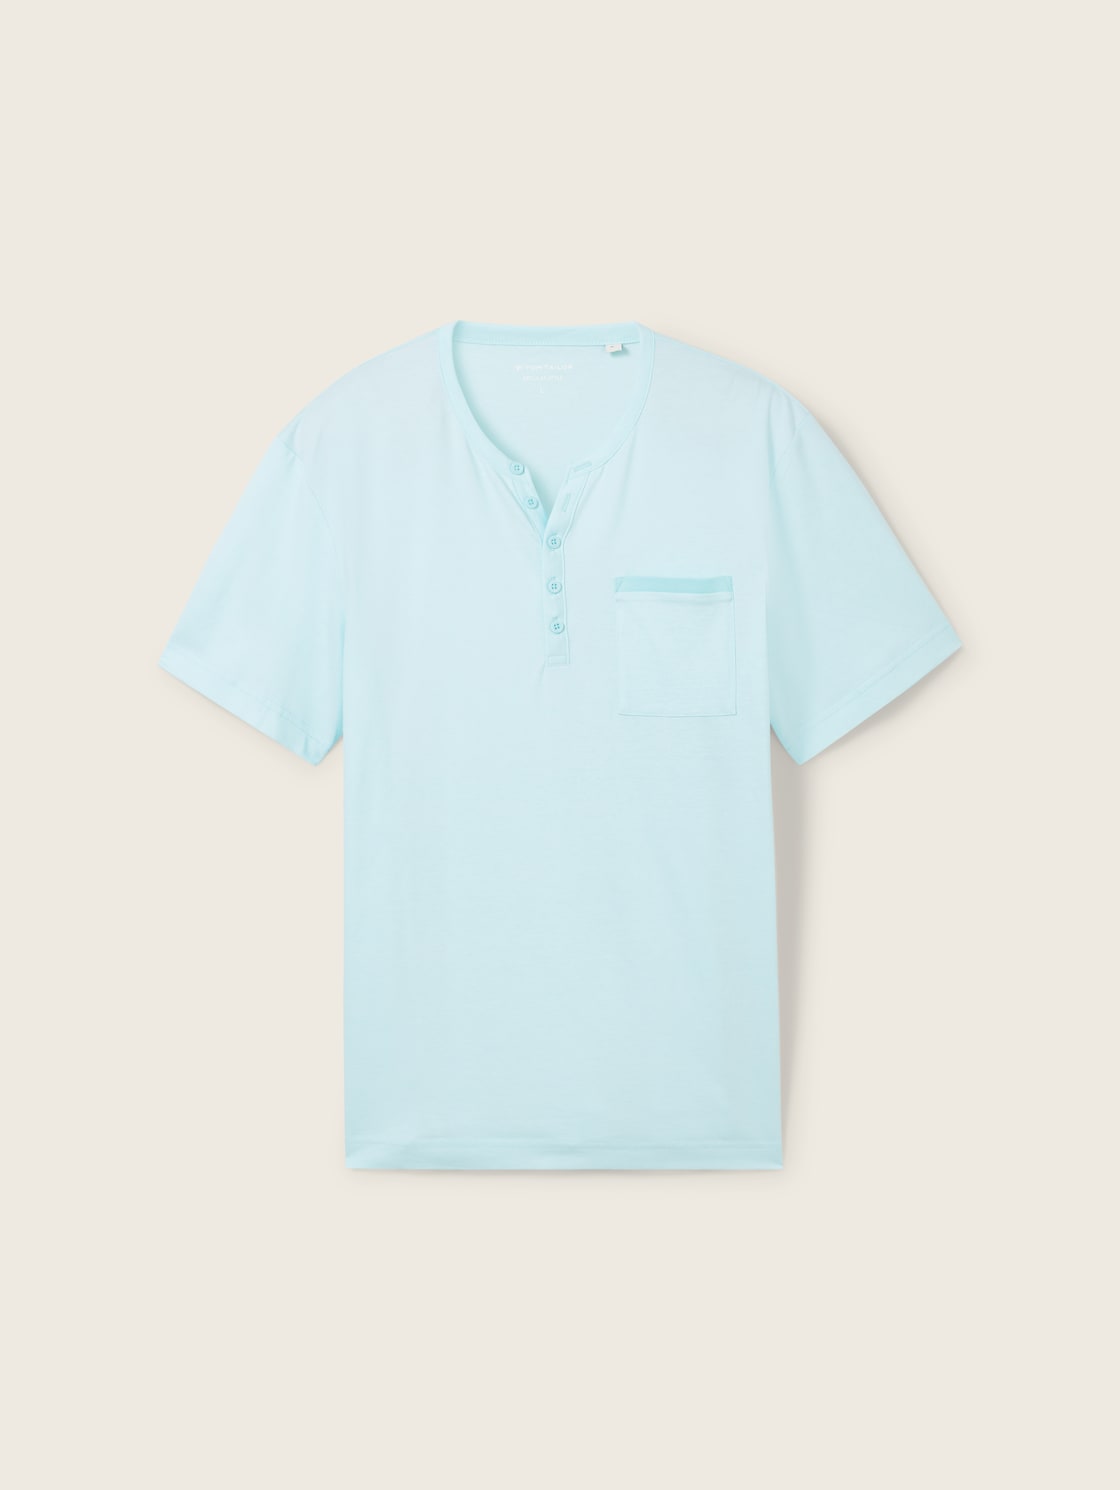 TOM TAILOR Herren Serafino T-Shirt, blau, Streifenmuster, Gr. XL von Tom Tailor